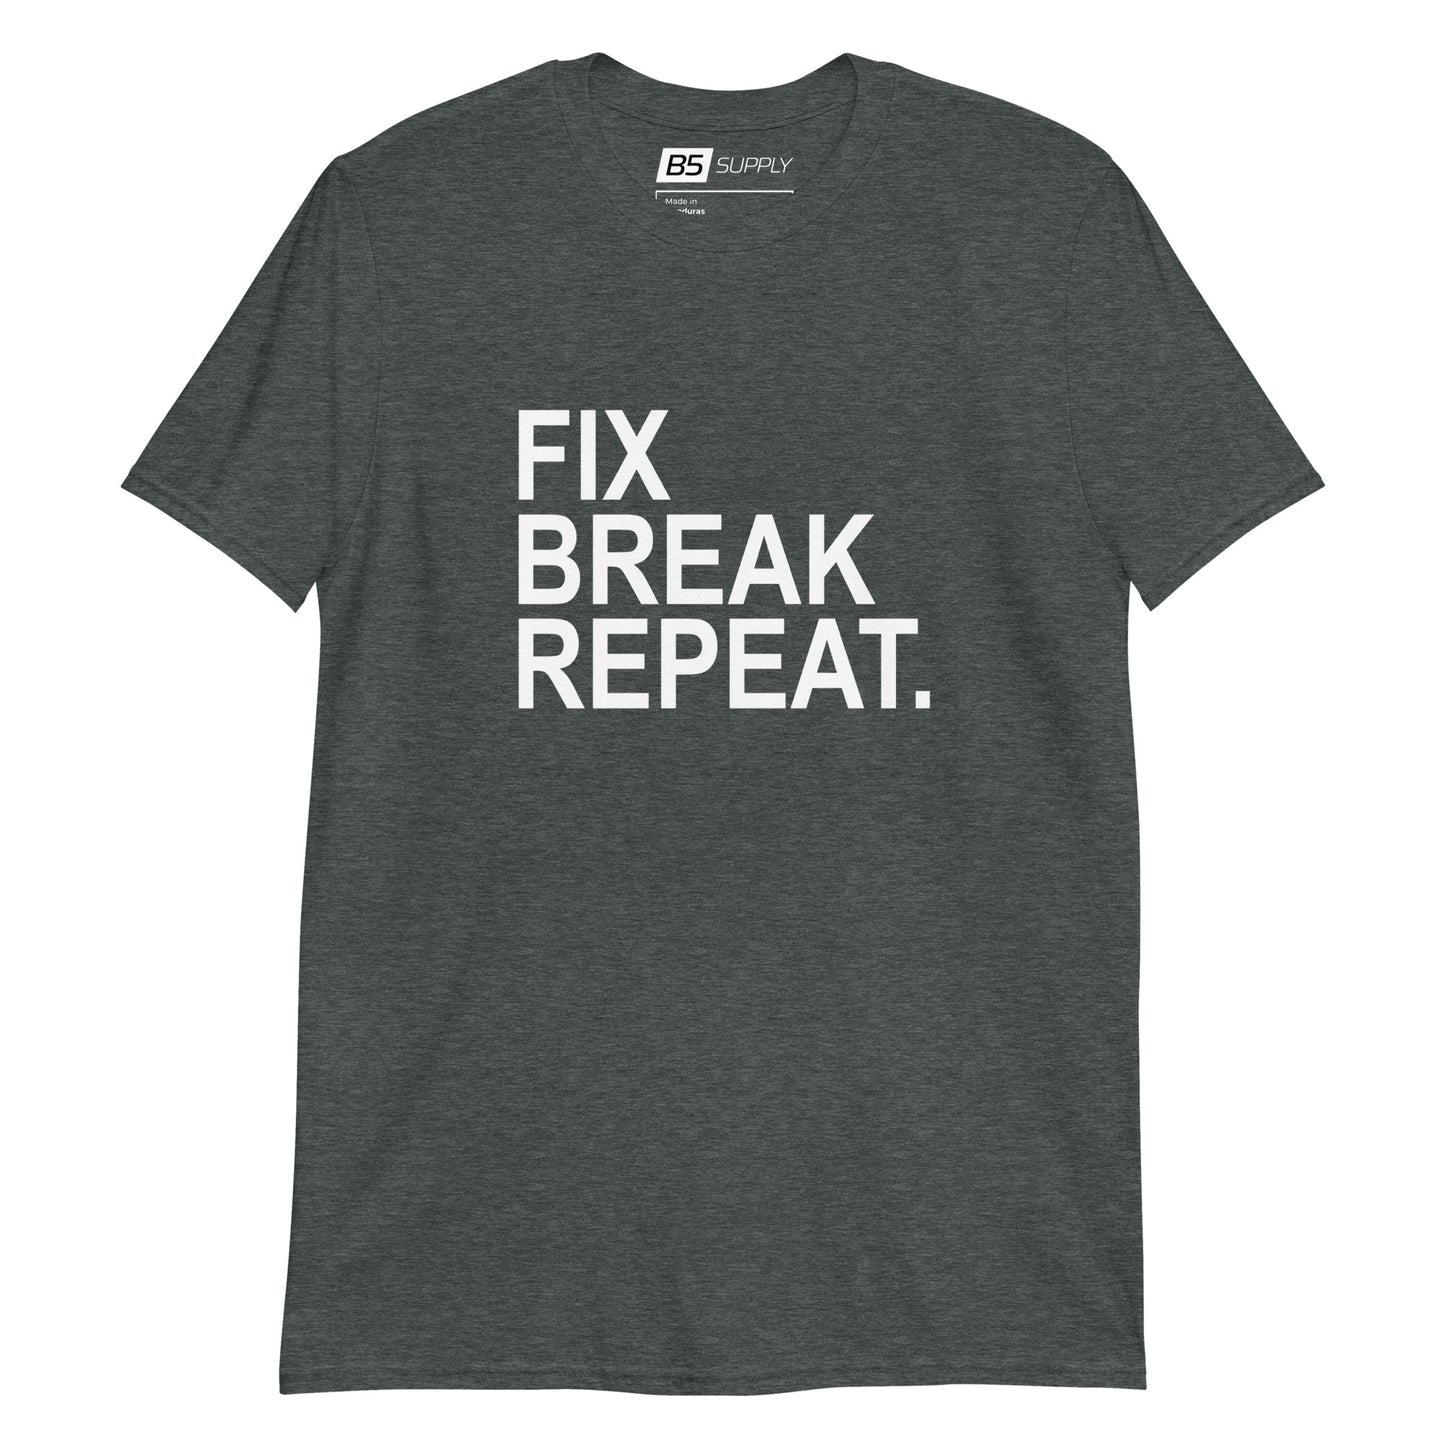 Fix, Break, Repeat T-Shirt